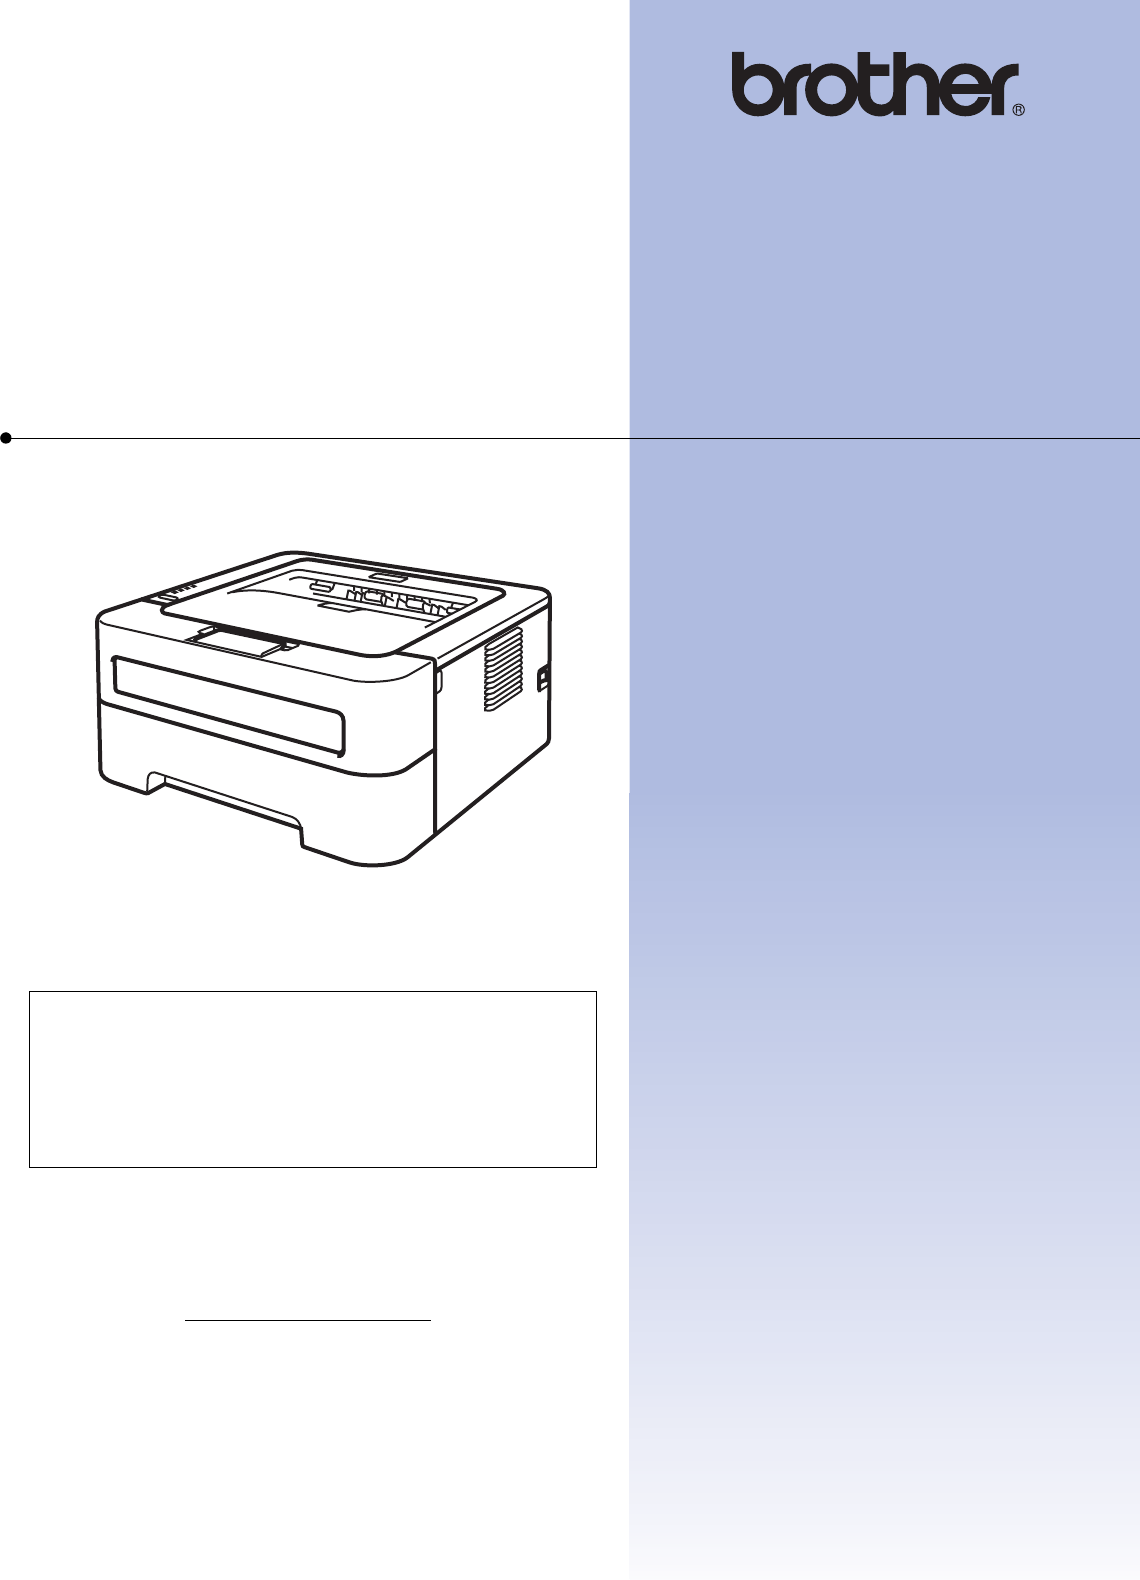 Brother Printer User Guide | ManualsOnline.com